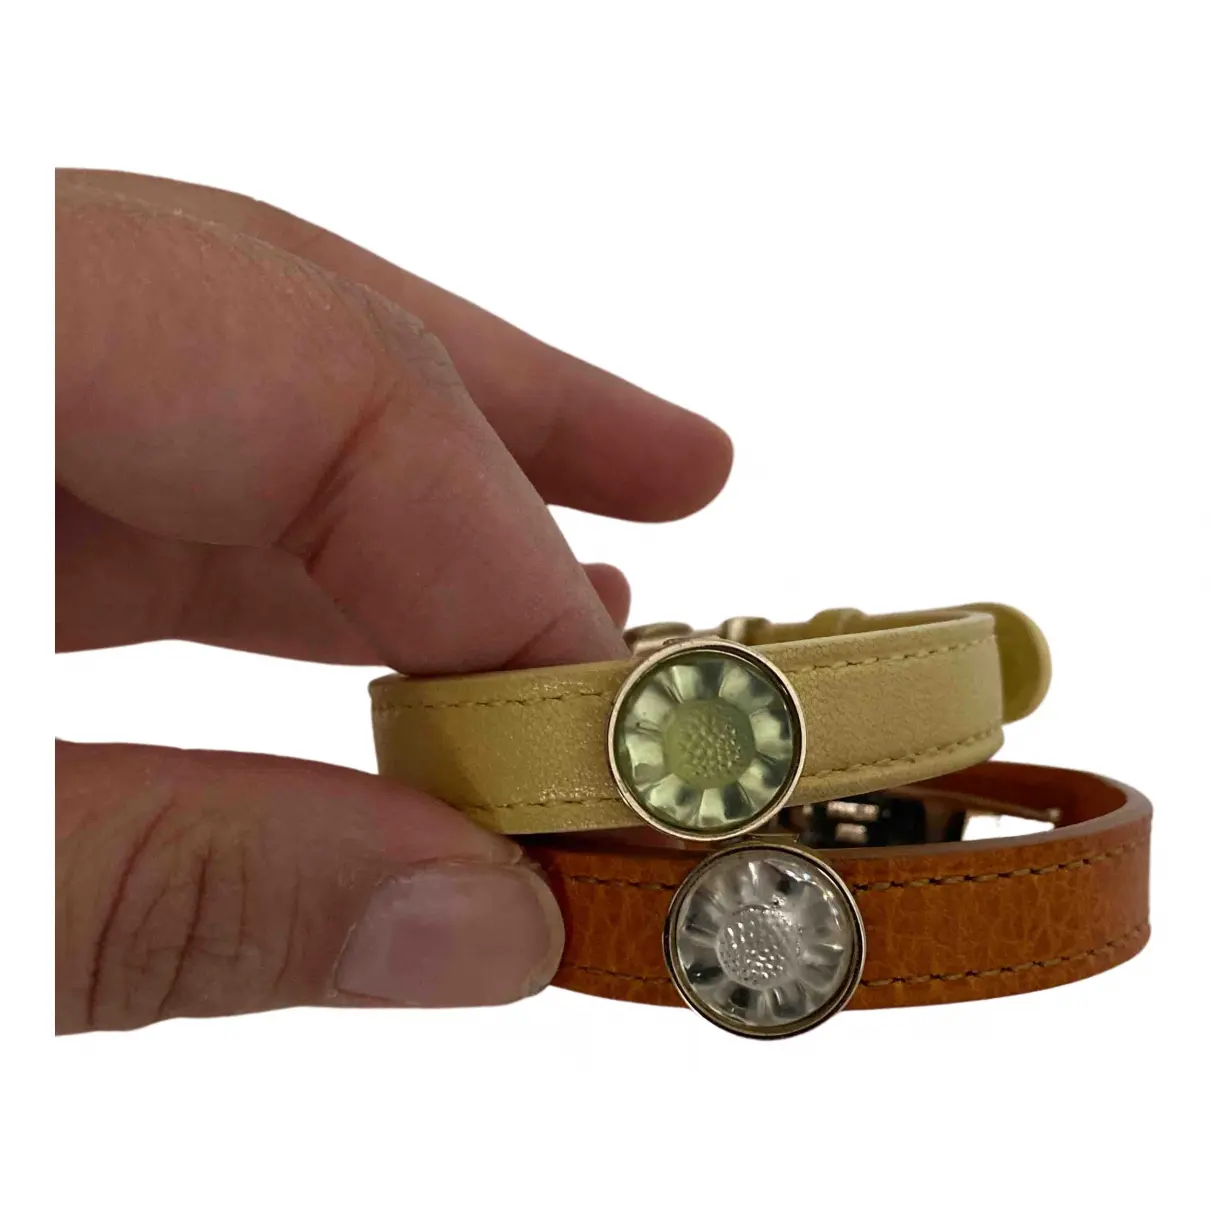 Buy Lalique Leather bracelet online